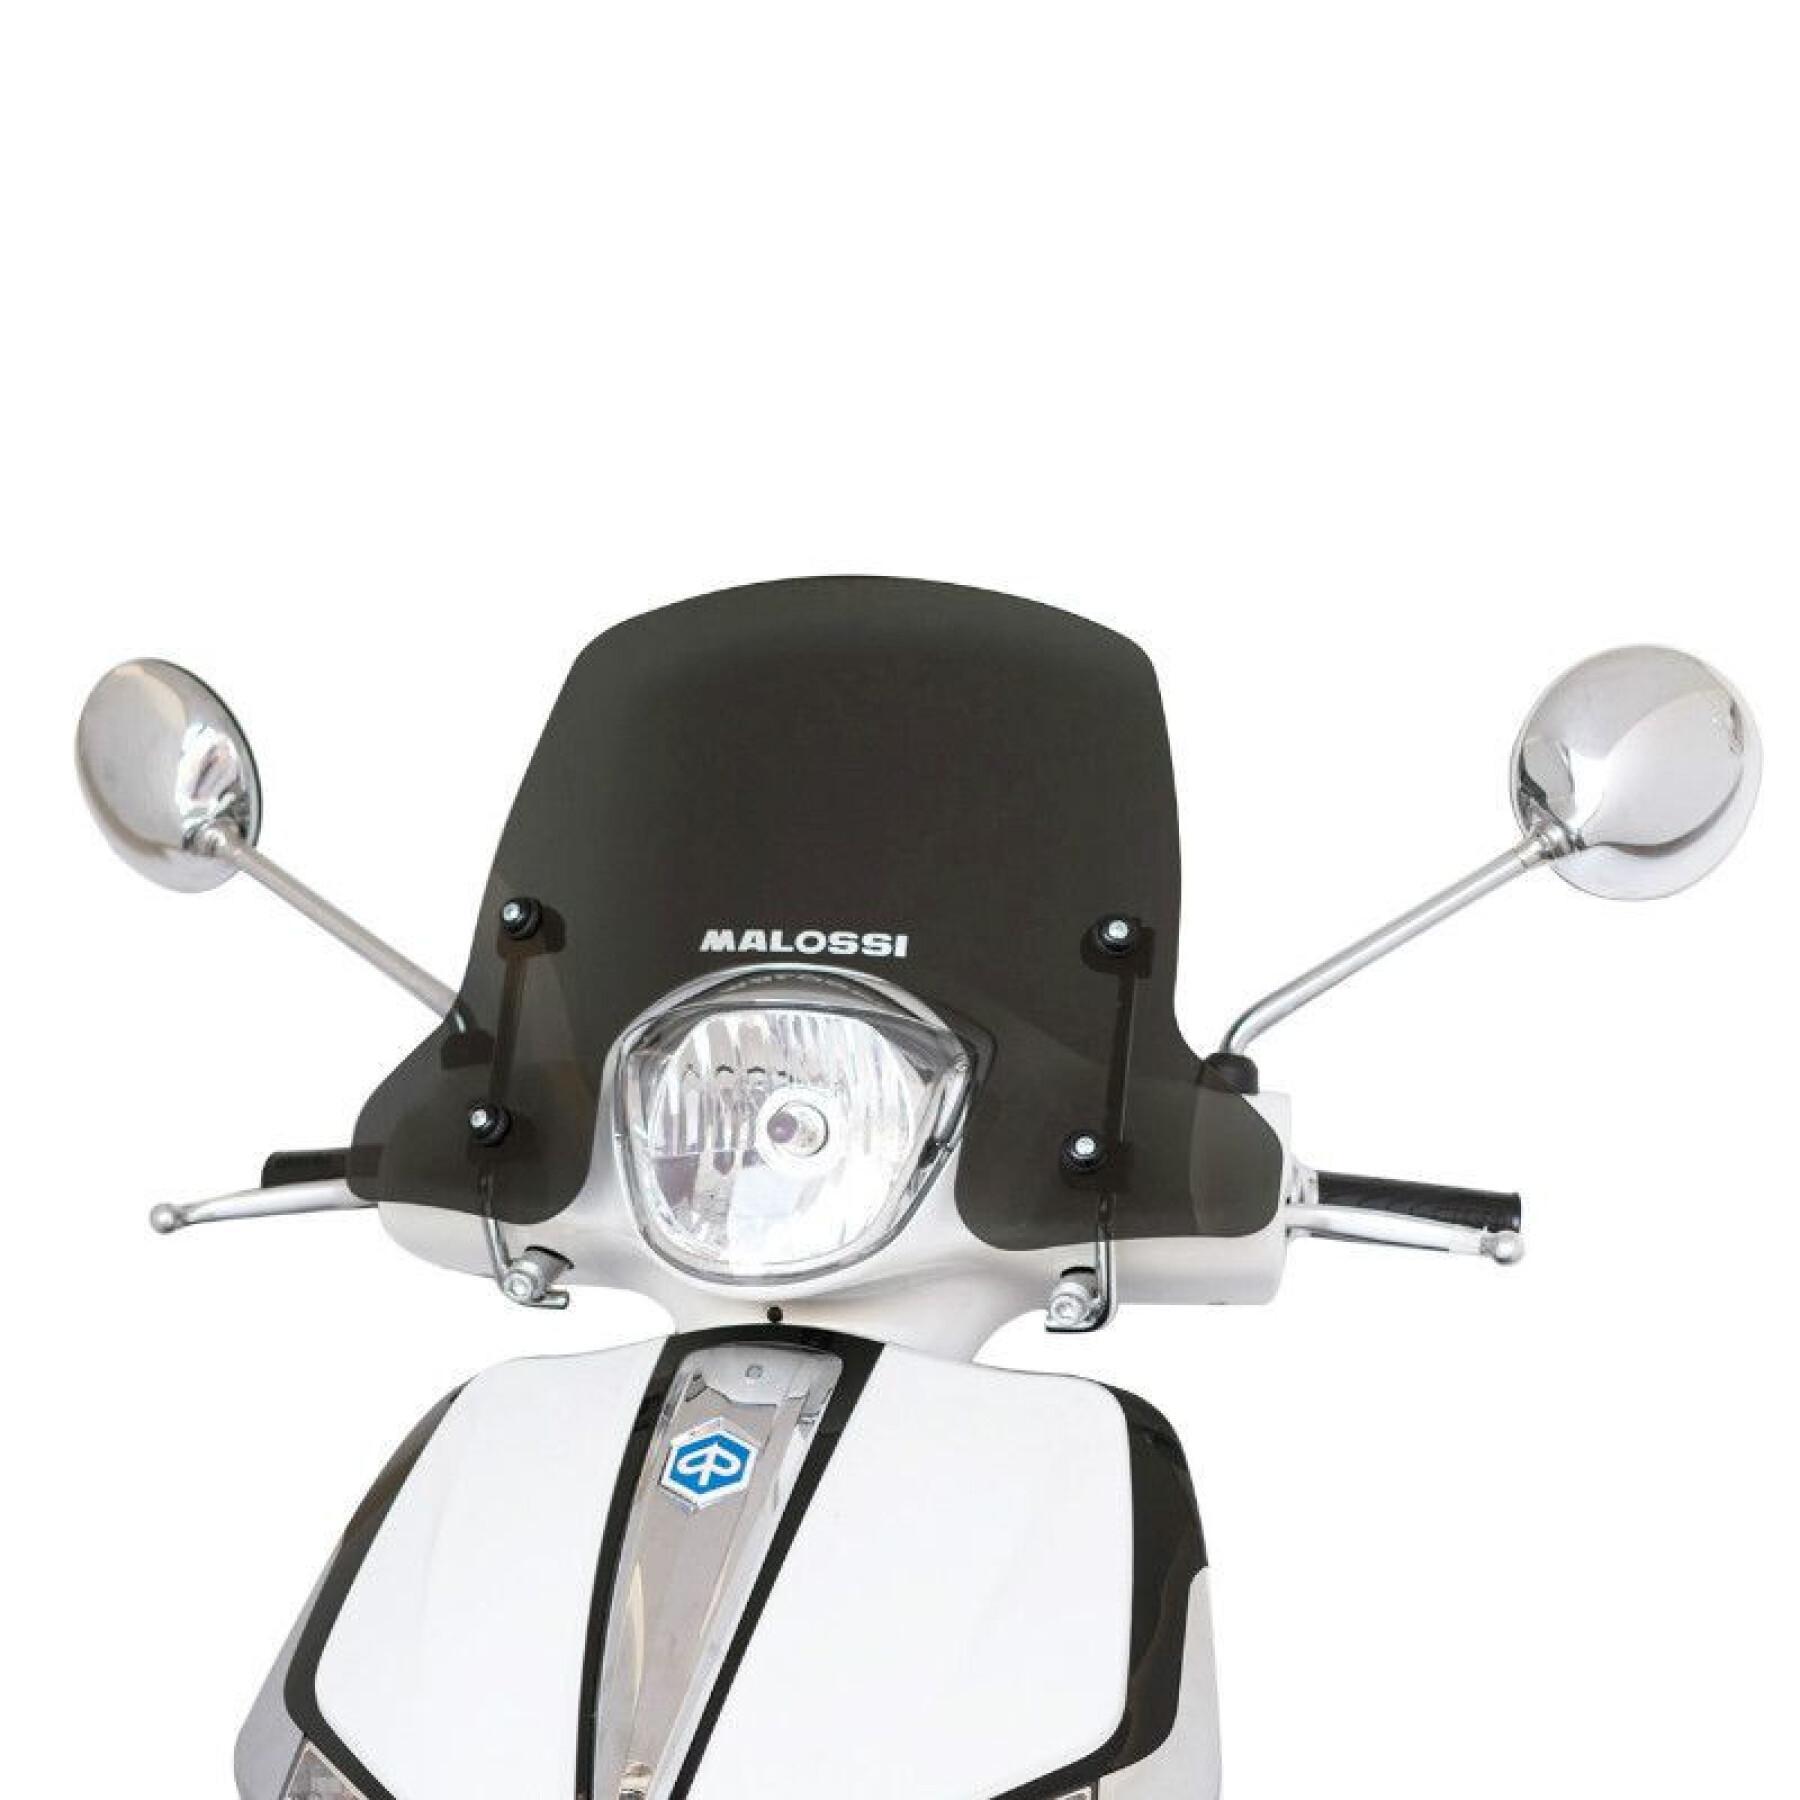 Pare-brise-saute vent scooter Malossi Piaggio 50-125 Liberty I-Get 2016+